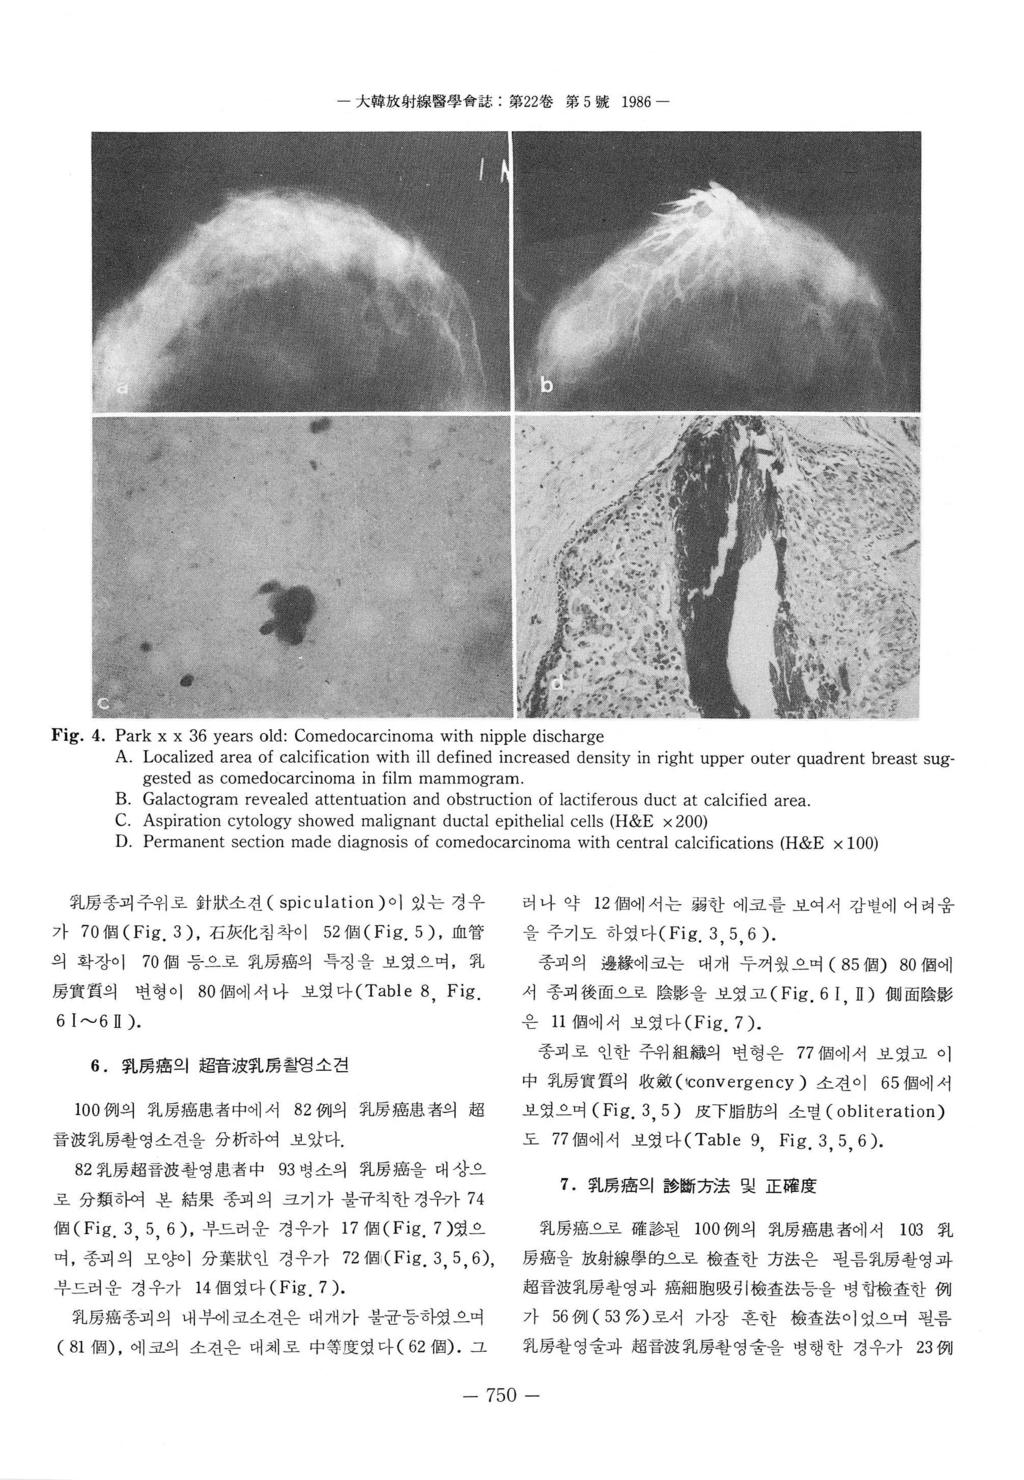 - 大짧放射緣醫學會誌 : 第 ~ 第 5 號 986 - Fig.. Park x x 6 years old: Comedocarcinoma with nipple discharge A.